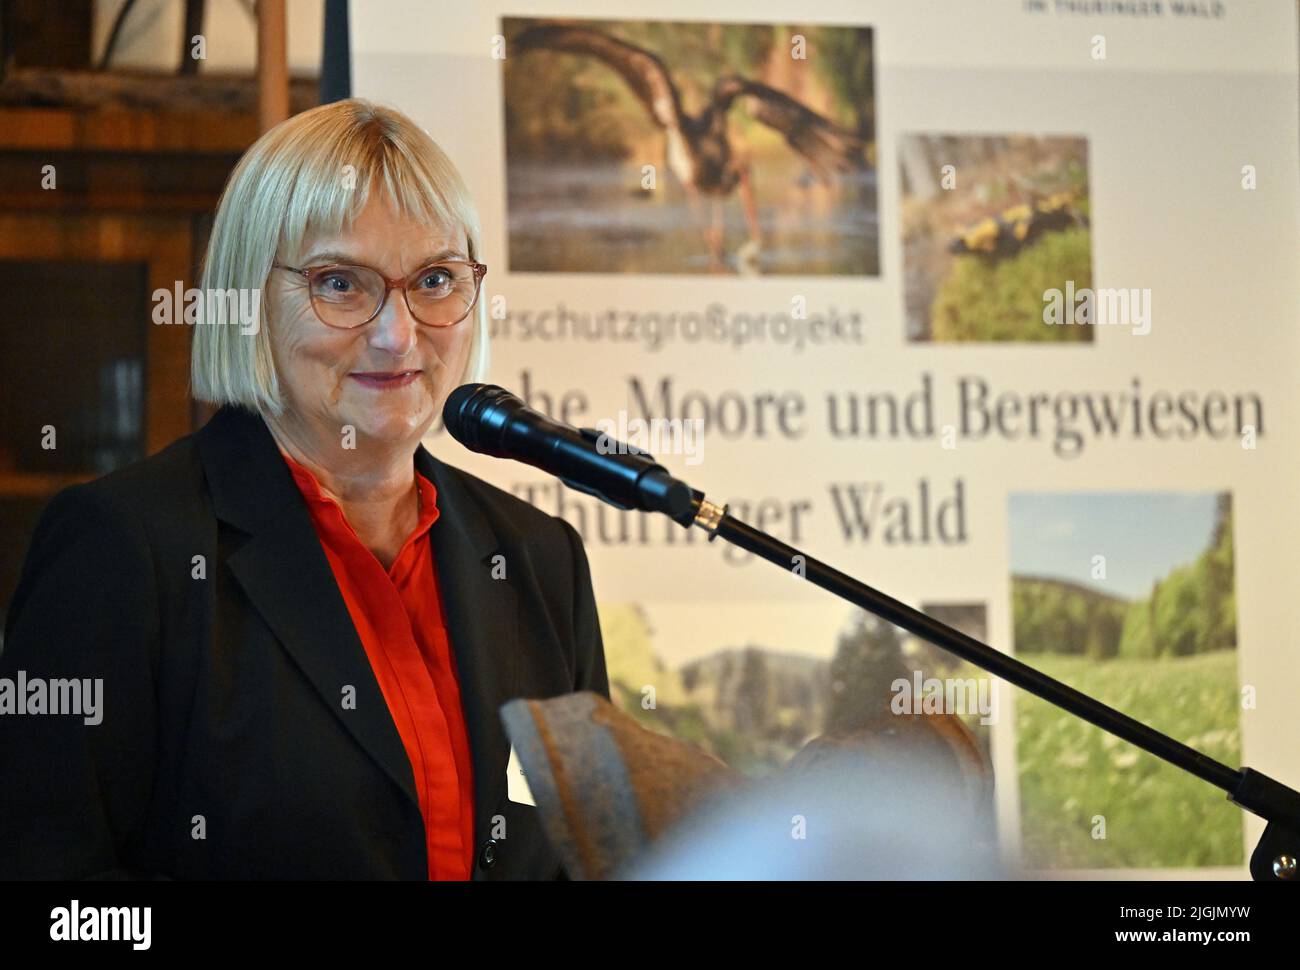 11 juillet 2022, Thuringe, Schmiedefeld am Rennsteig: Bettina Hoffmann, secrétaire d'Etat parlementaire du ministère fédéral de l'Environnement, s'exprime lors du lancement officiel du projet de conservation de la nature à grande échelle "les arbres, les Maures et les prairies de montagne dans la forêt de Thuringe". Le Ministère fédéral de l'environnement, le Ministère de l'environnement de Thuringe, le BUND et le Naturstiftung David lancent le projet. En raison de l'intervention humaine, les cours d'eau et les tourbières ne peuvent remplir leurs fonctions écologiques que dans une mesure limitée. Le manque d'utilisation agricole met en danger l'avenir de la moun précieuse Banque D'Images